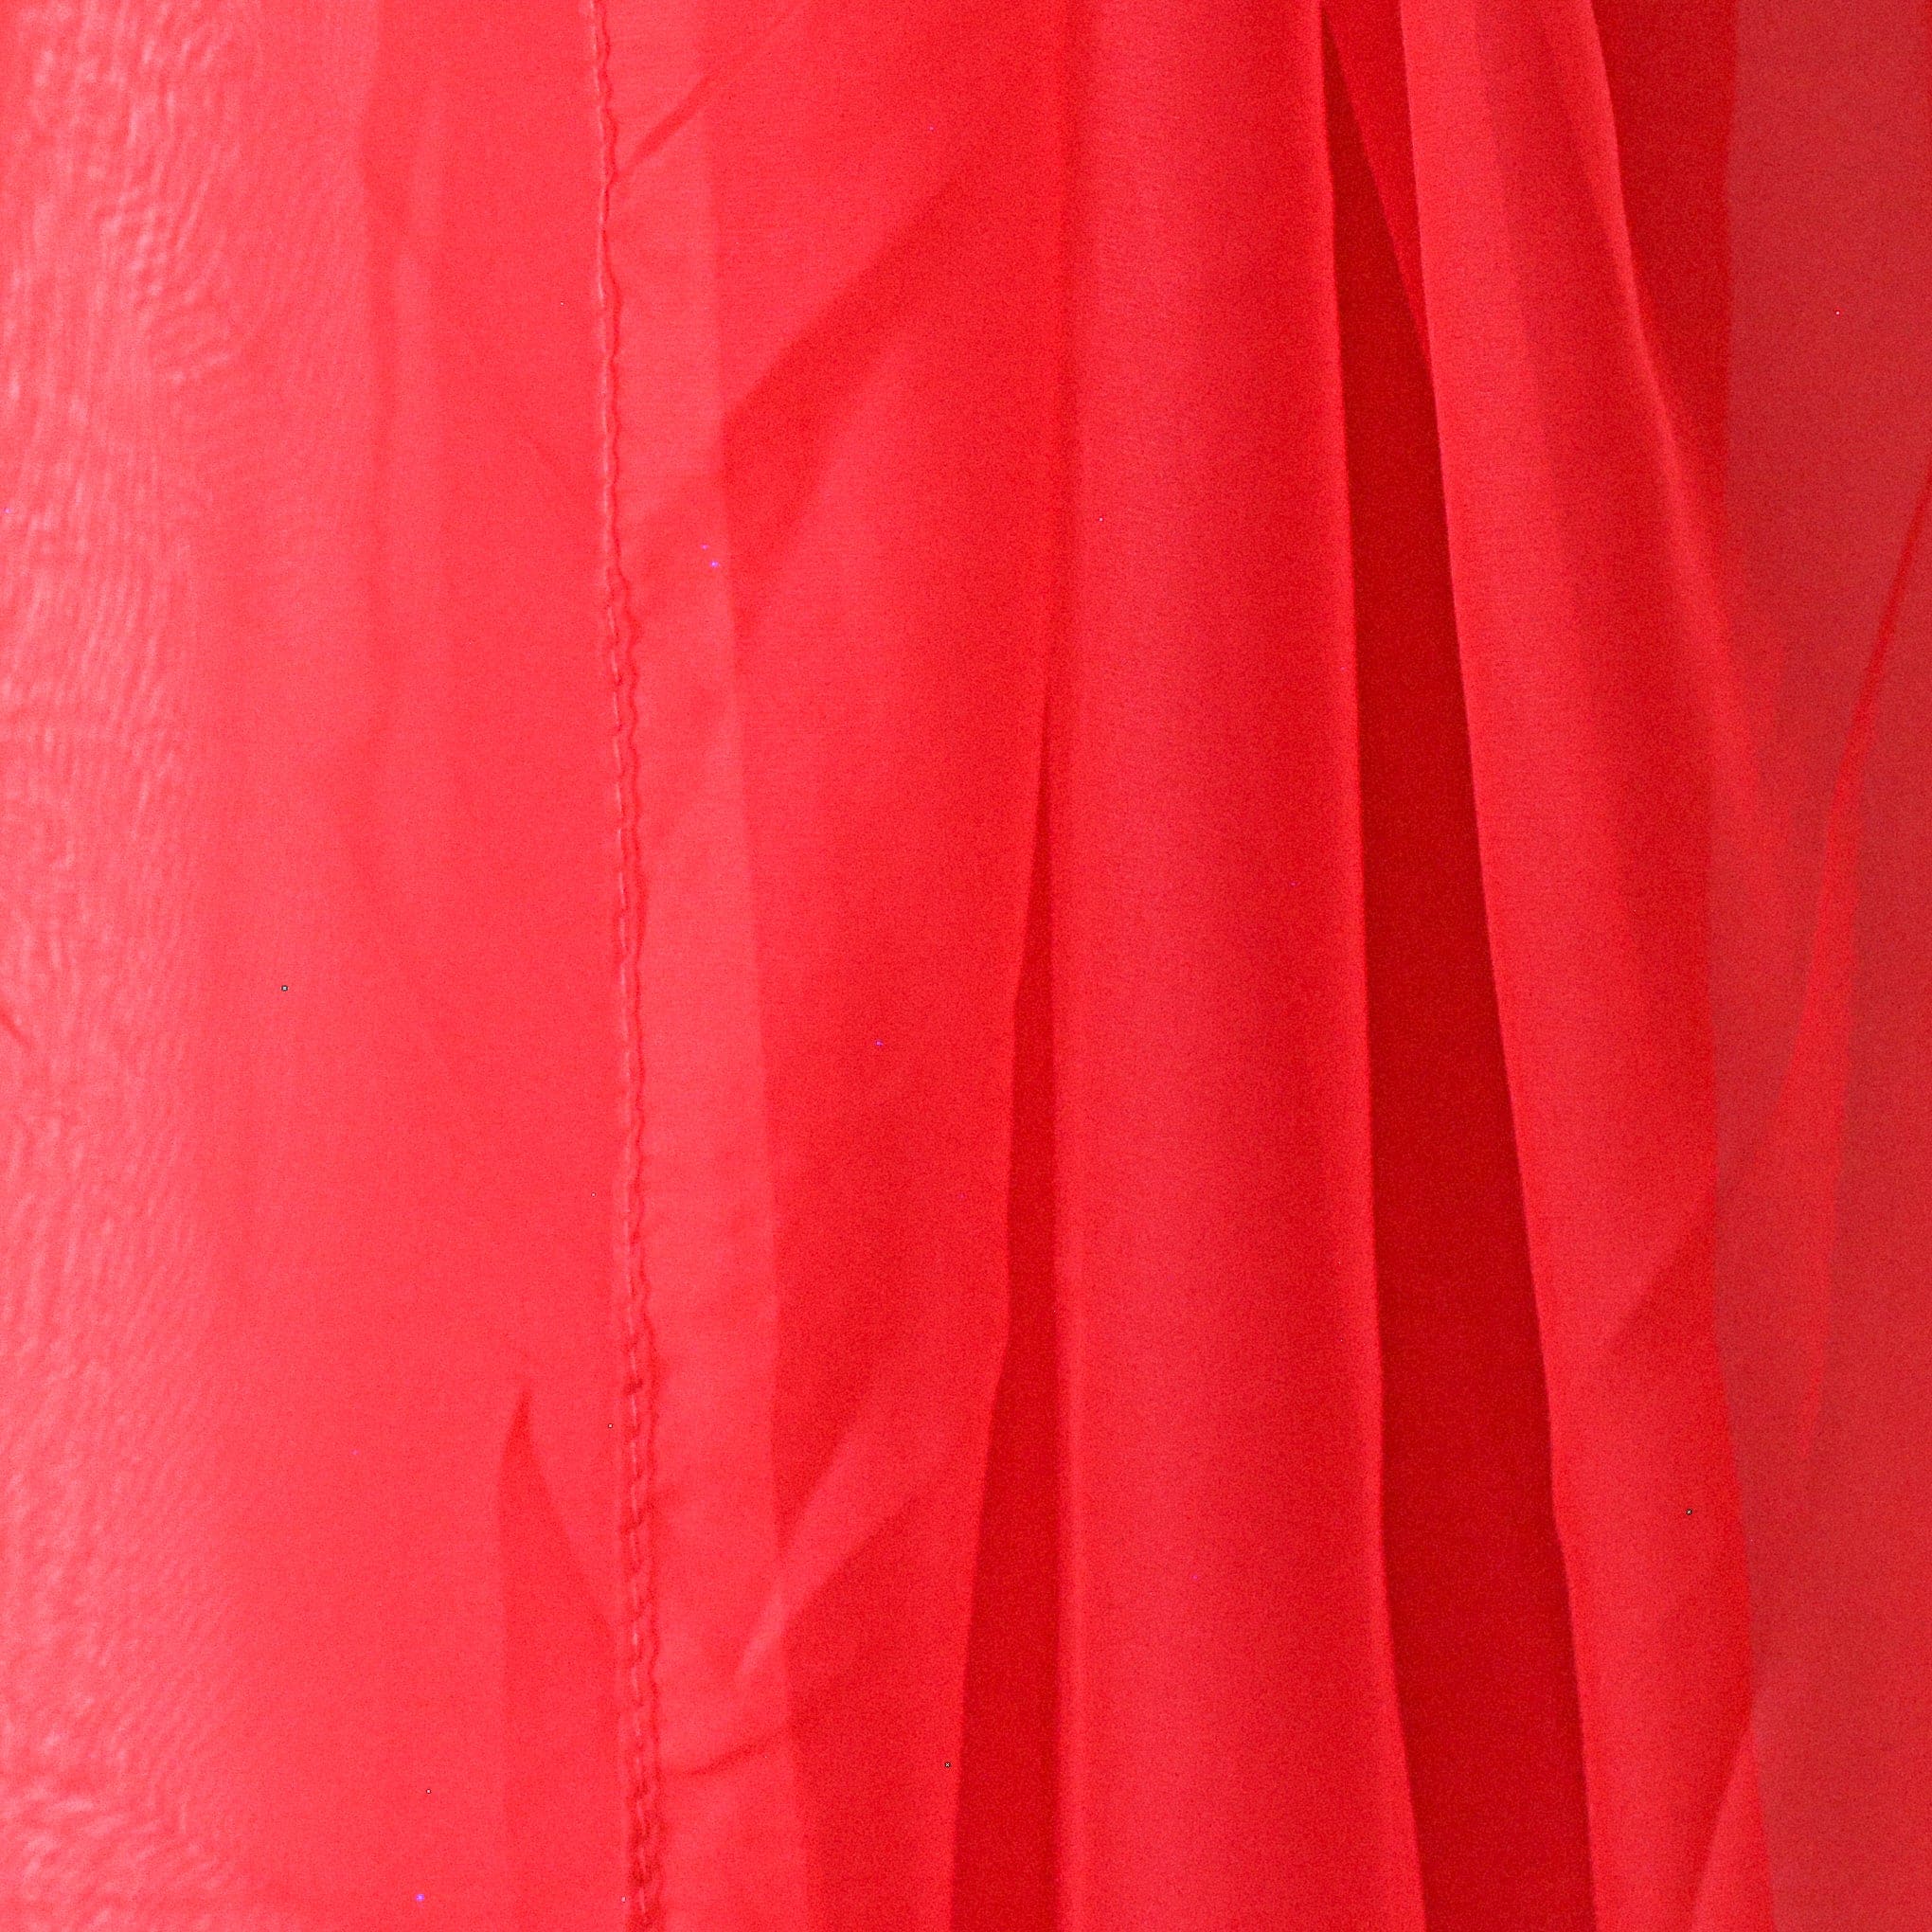 shawl Arenberg - Red - shawl